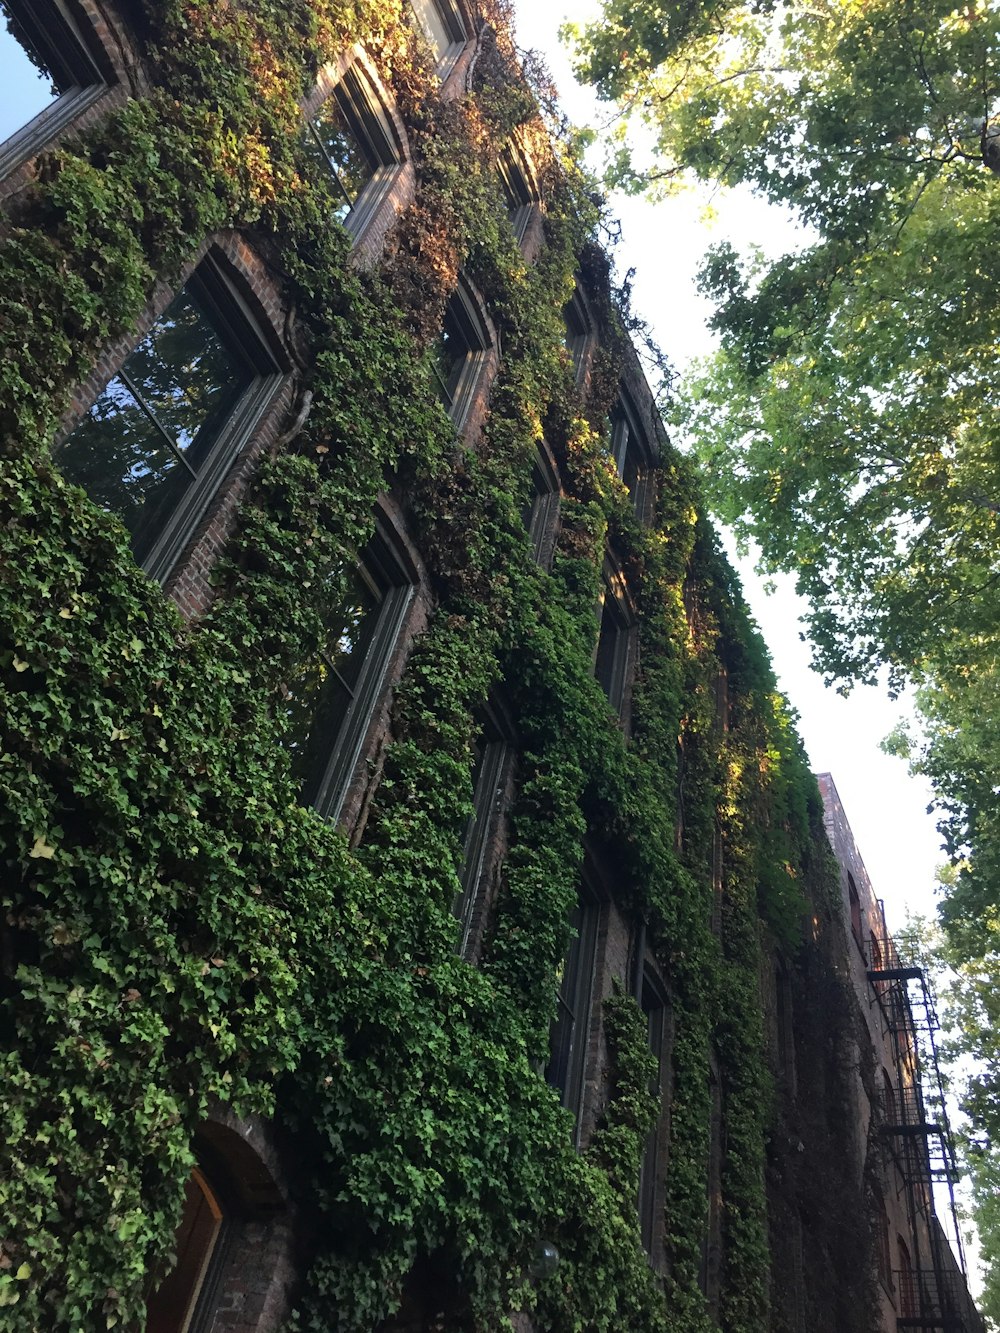 vines on brown brick building